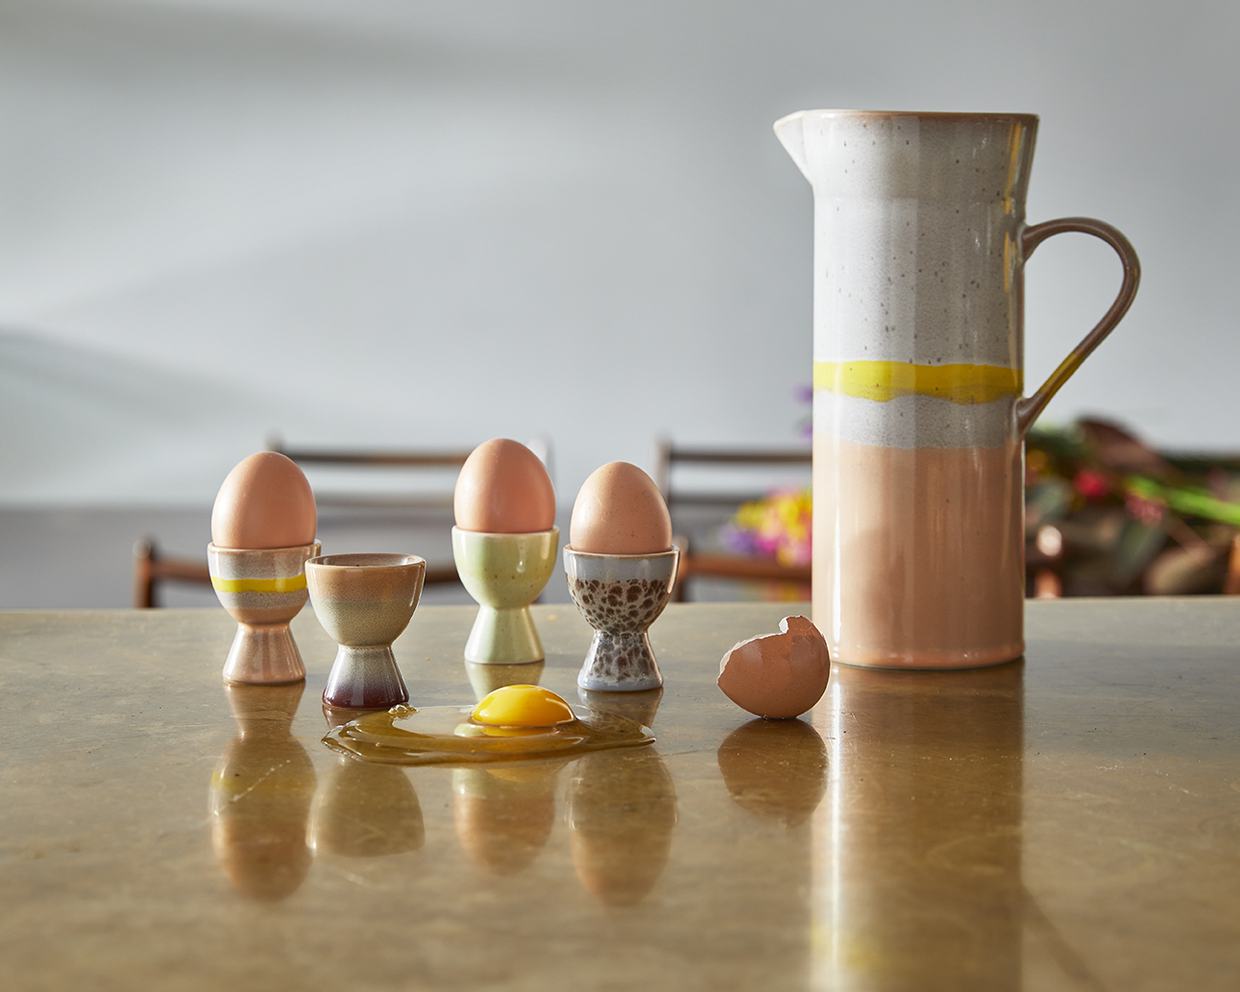 70s ceramics: egg cups, taurus (set of 4)